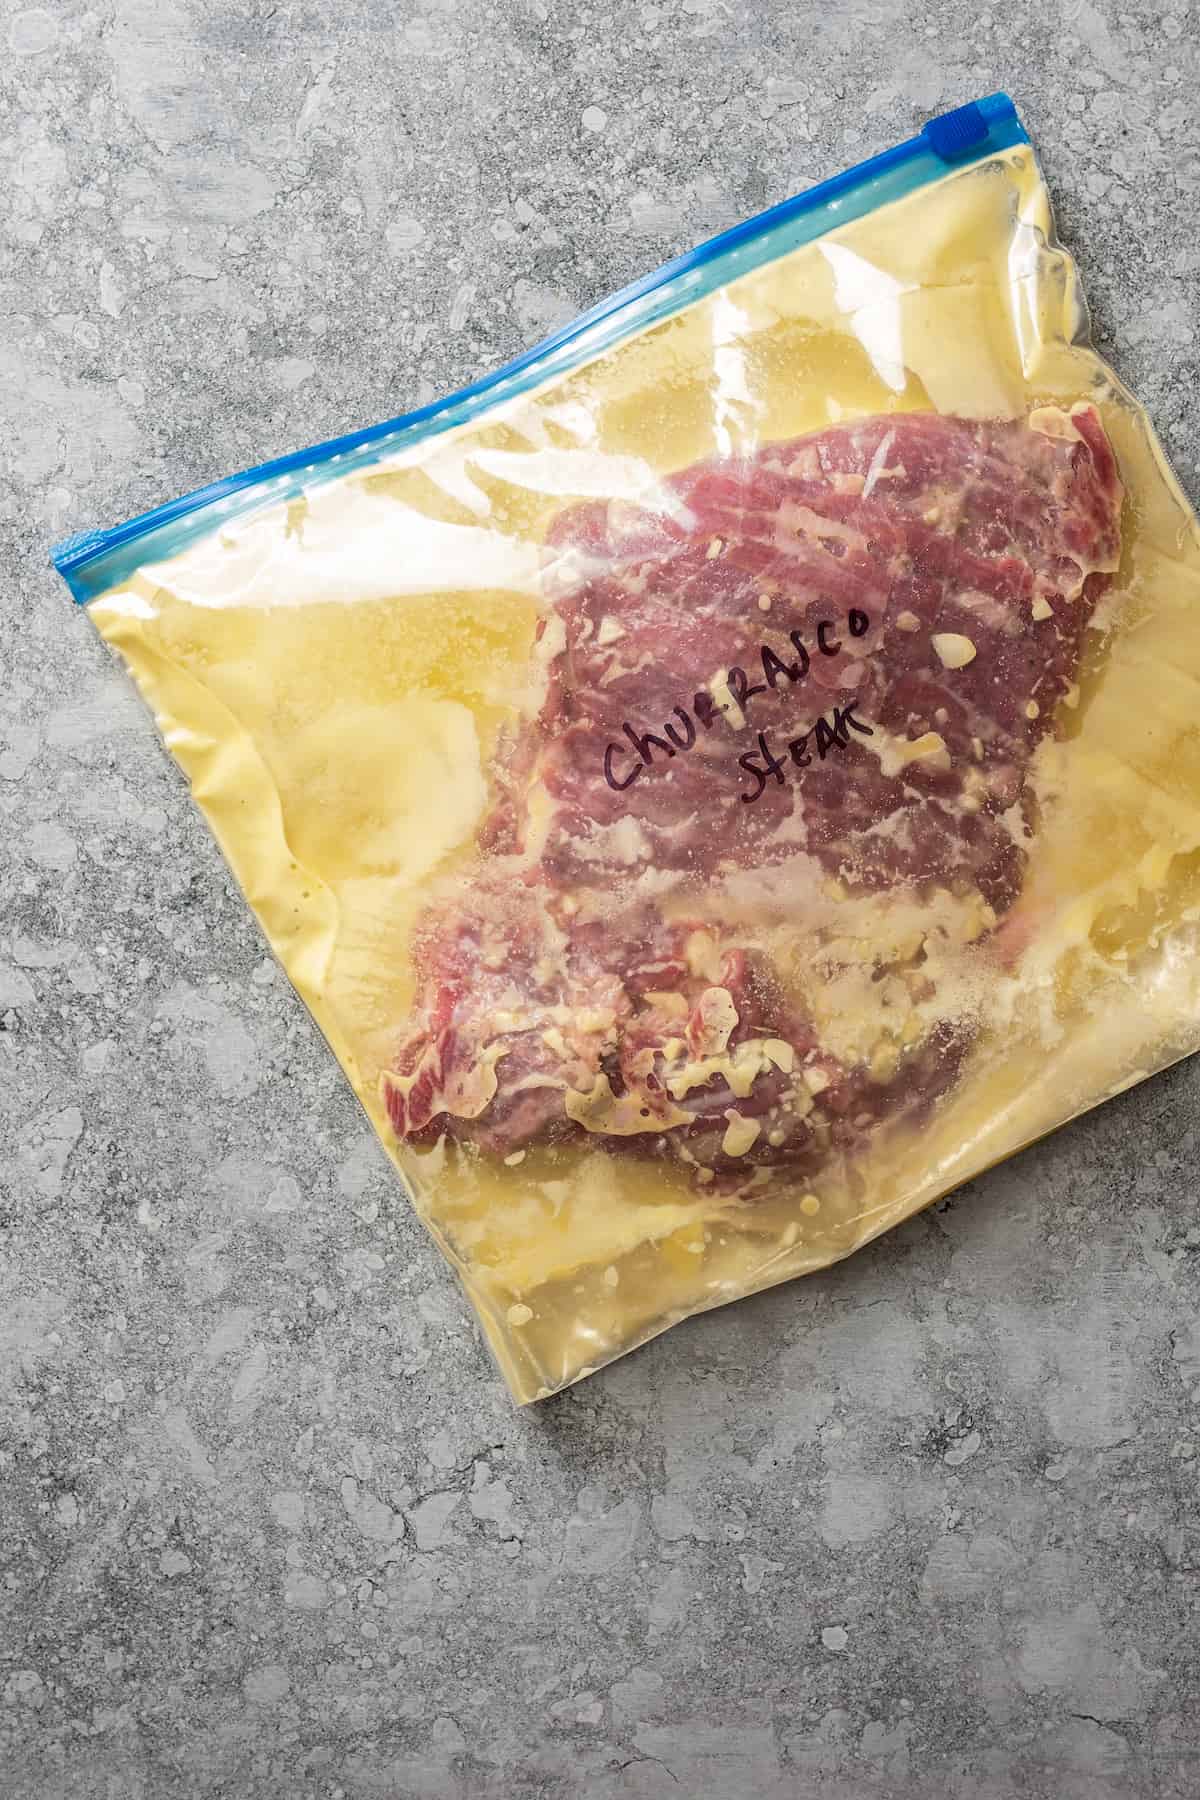 Marinating churrasco steak in a Ziplock bag.